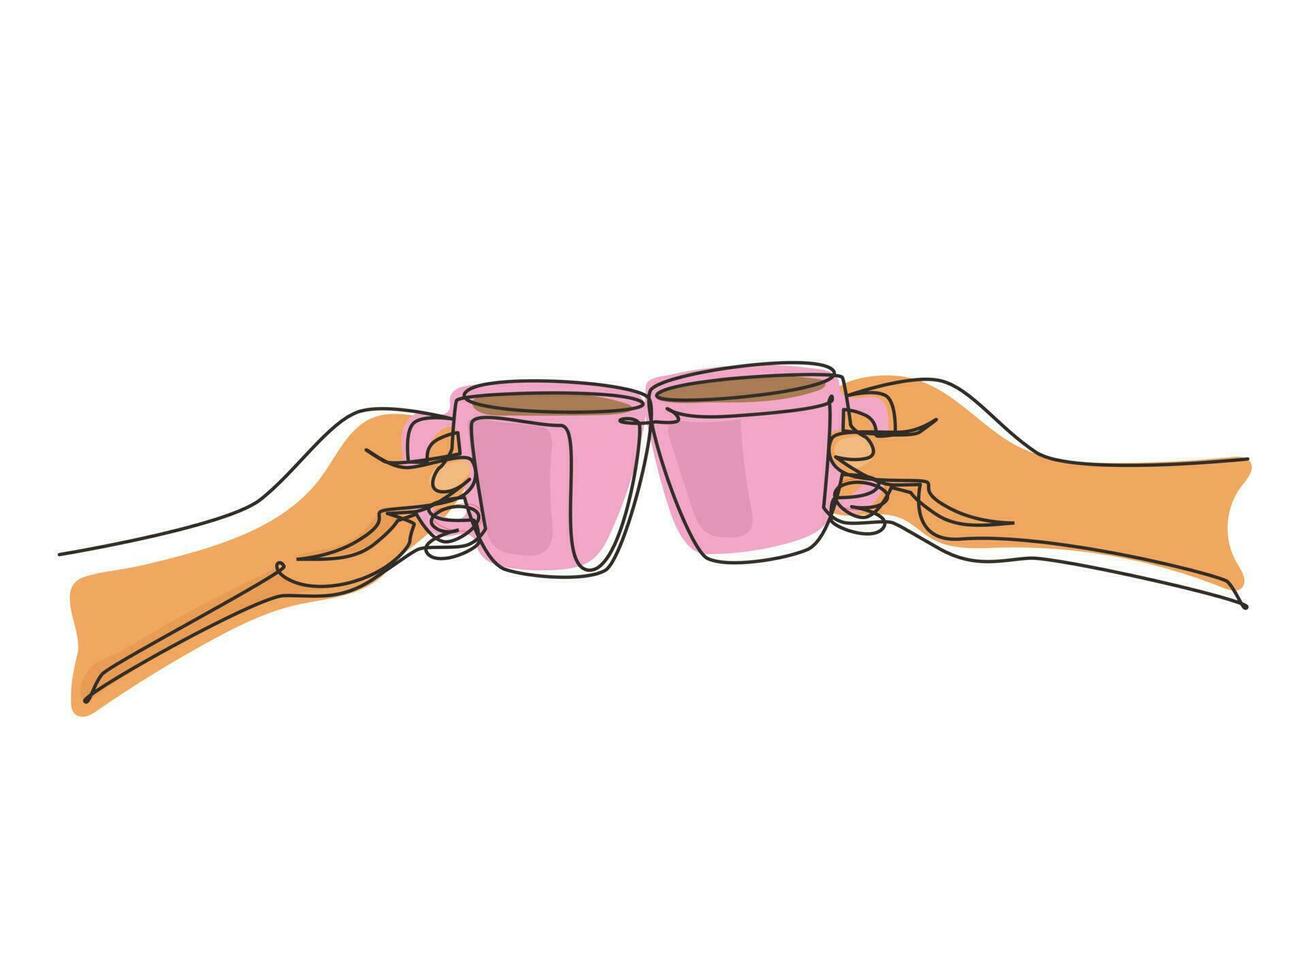 enda kontinuerlig linje ritning händer med koppar varmt kaffe eller varmt te. klinga glas med två koppar kaffe. närbild beskuren bild av två händer som håller kopp och rostat bröd. en linje rita design vektor